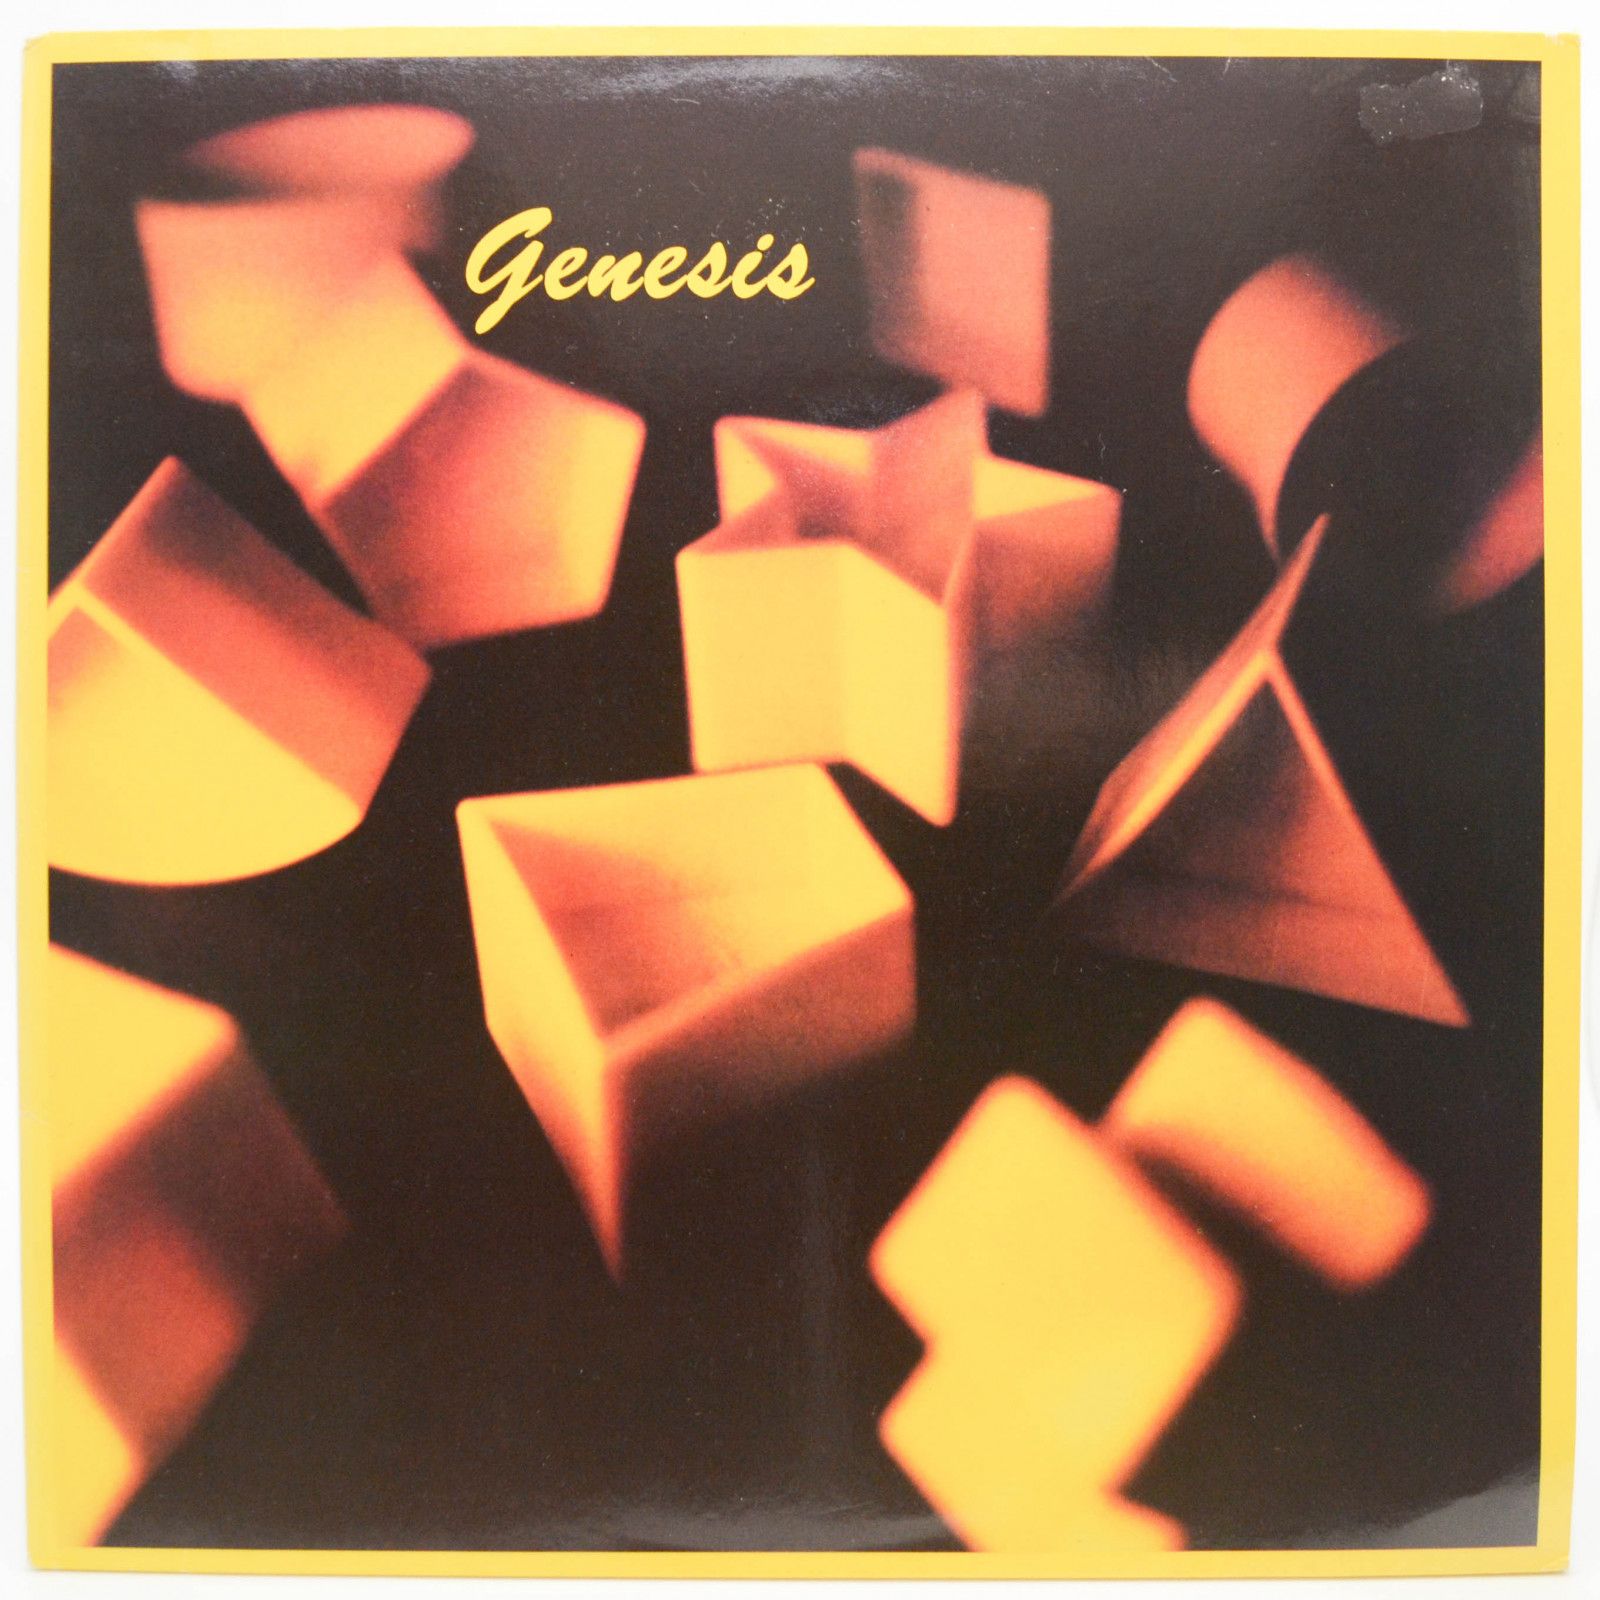 Genesis — Genesis, 1983